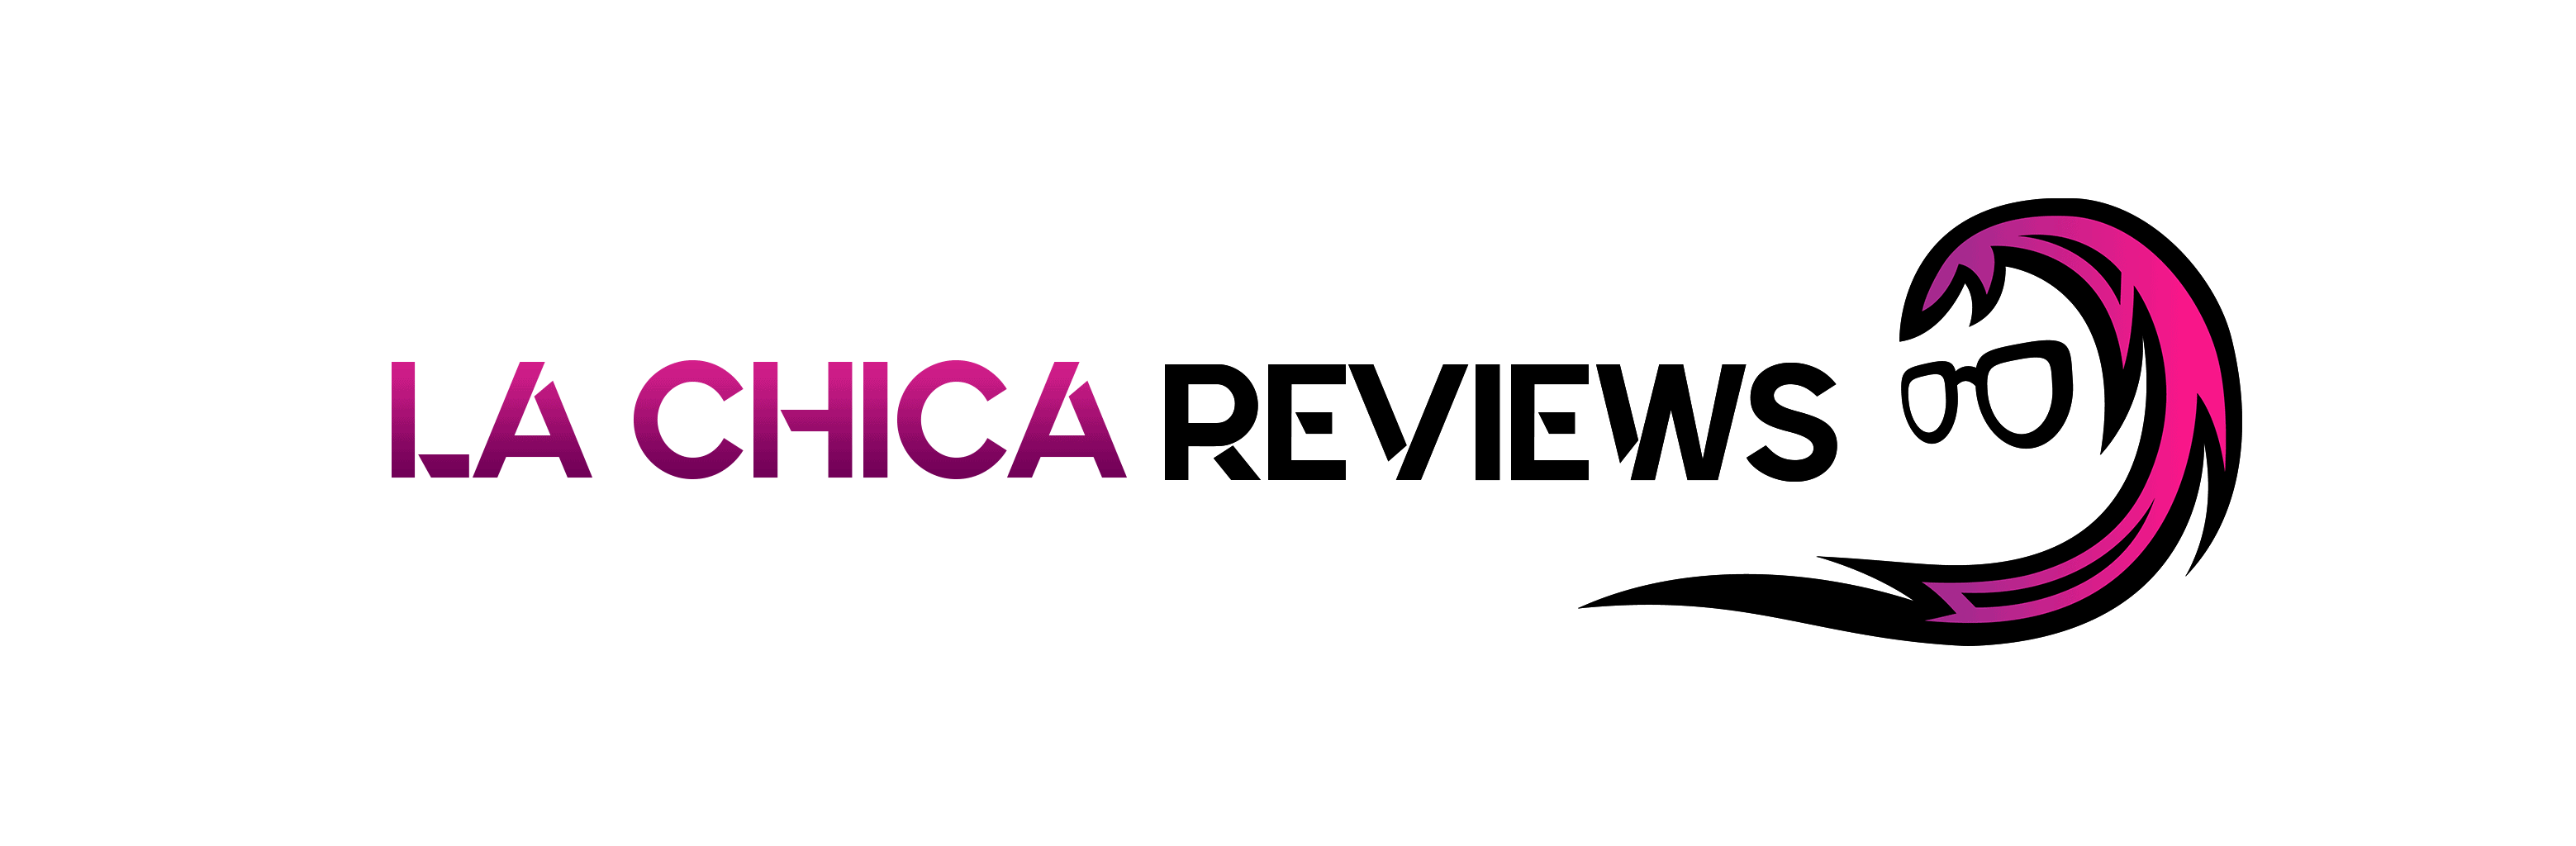 Chica reviews